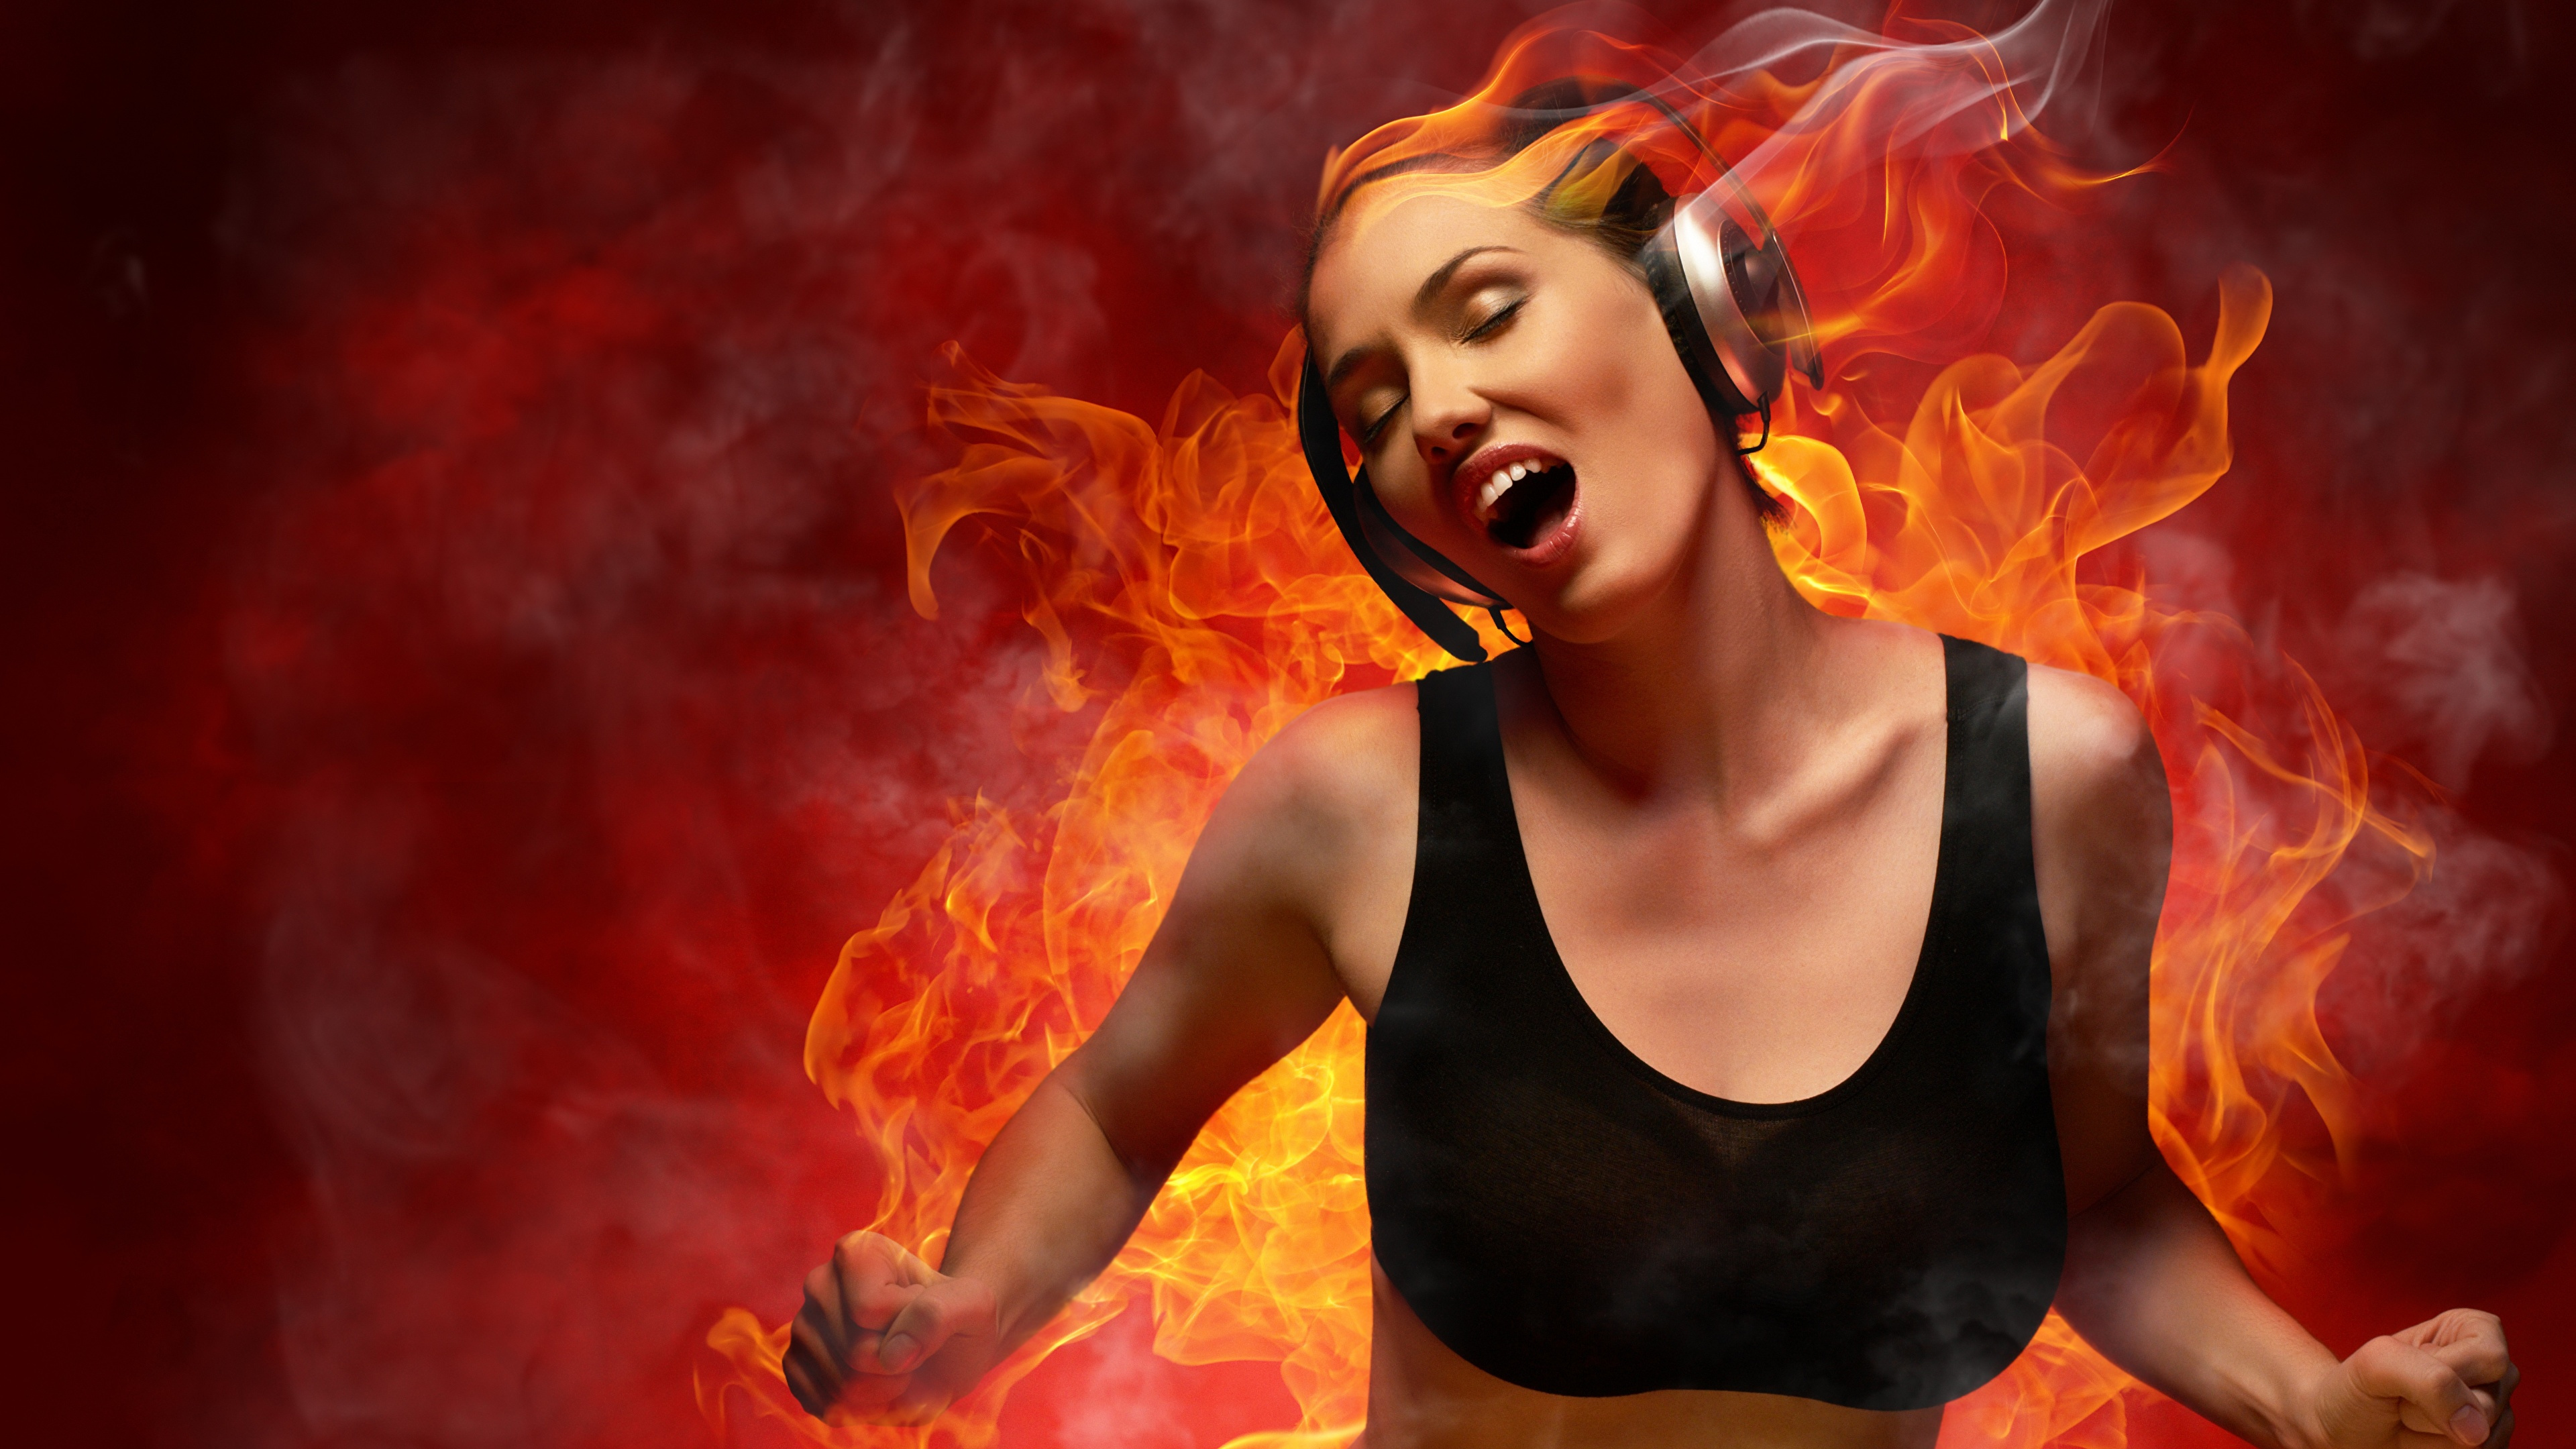 Flamme, Muskel, Feuer, DJ-mixer, Mädchen. Wallpaper in 3840x2160 Resolution